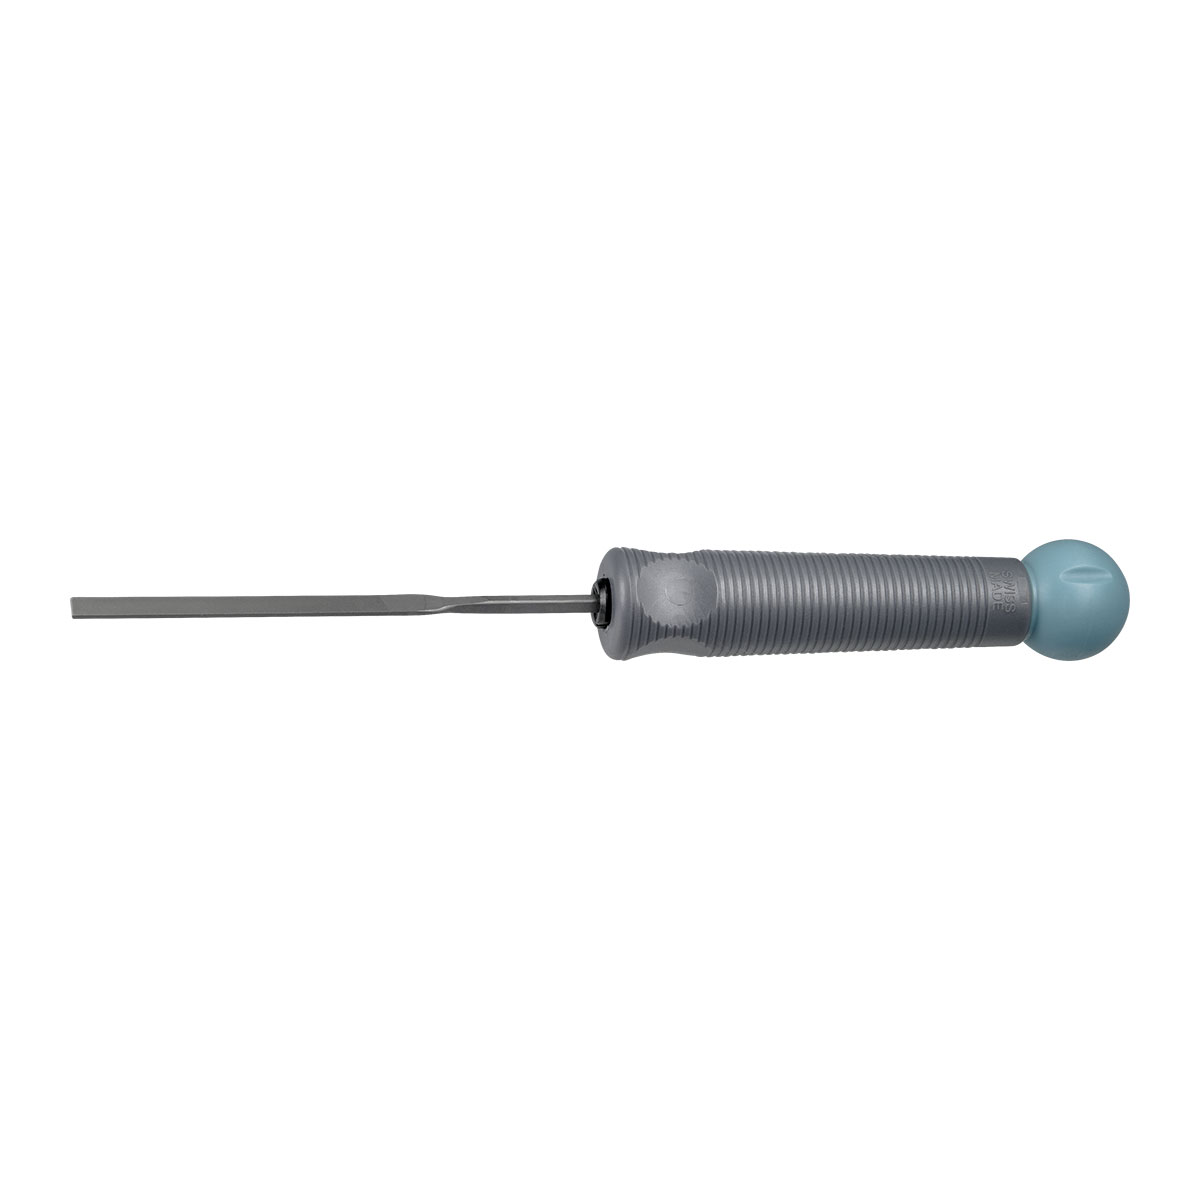 Dick Werkzeuggriff für Nadelfeilen, mit Spannzange 3 - 4 mm, Länge 95 mm